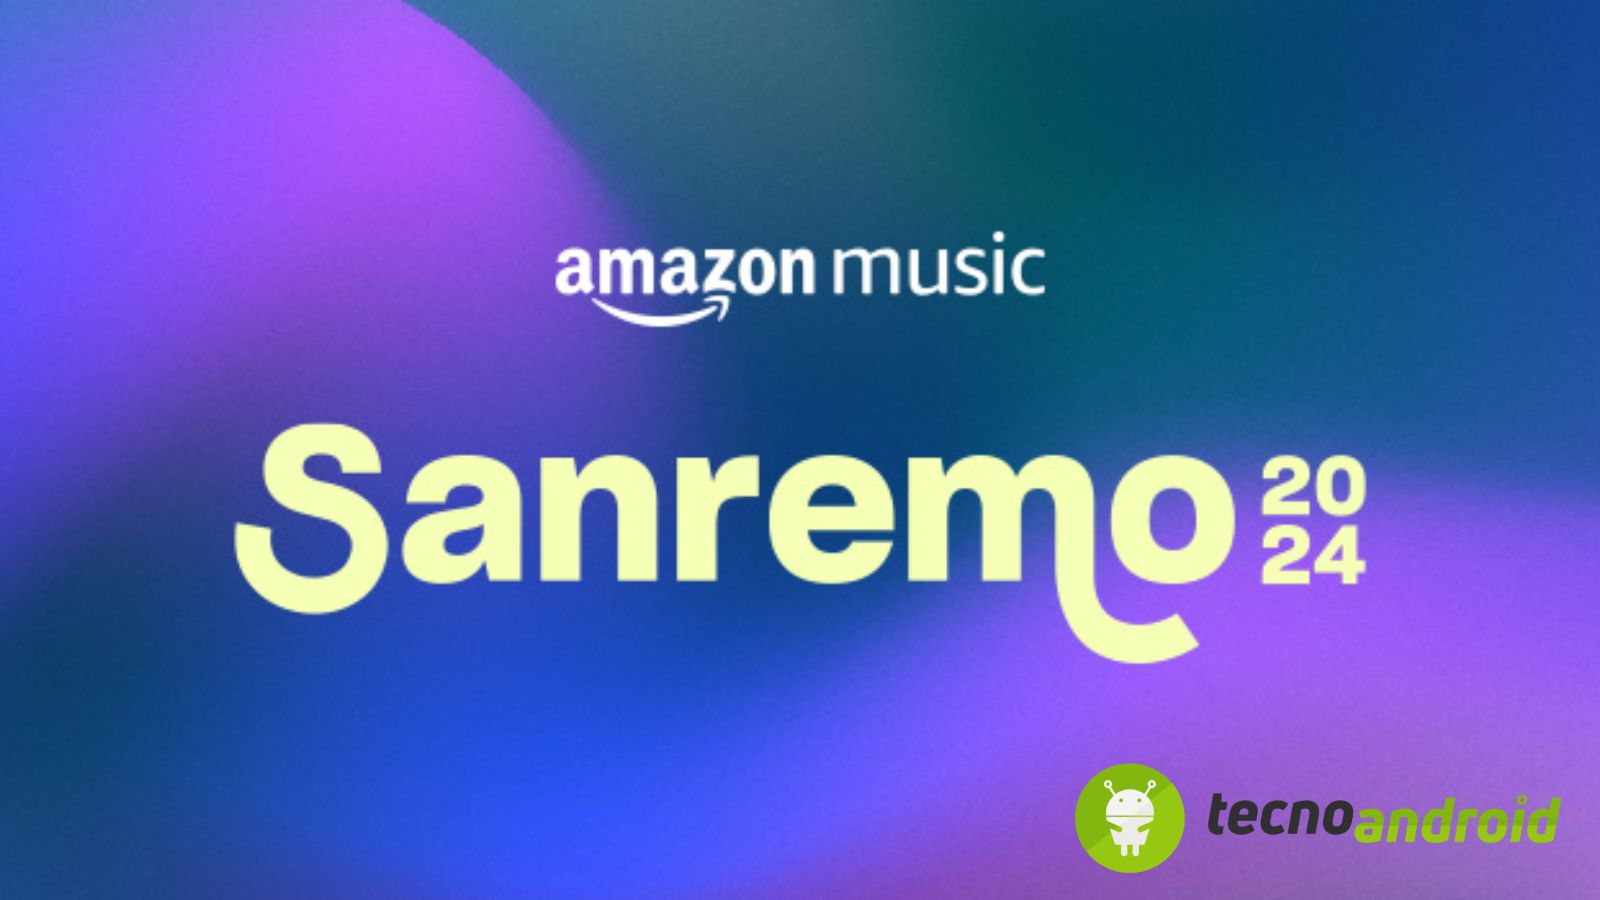 Sanremo e Amazon Music: quali sono gli artisti più richiesti? 